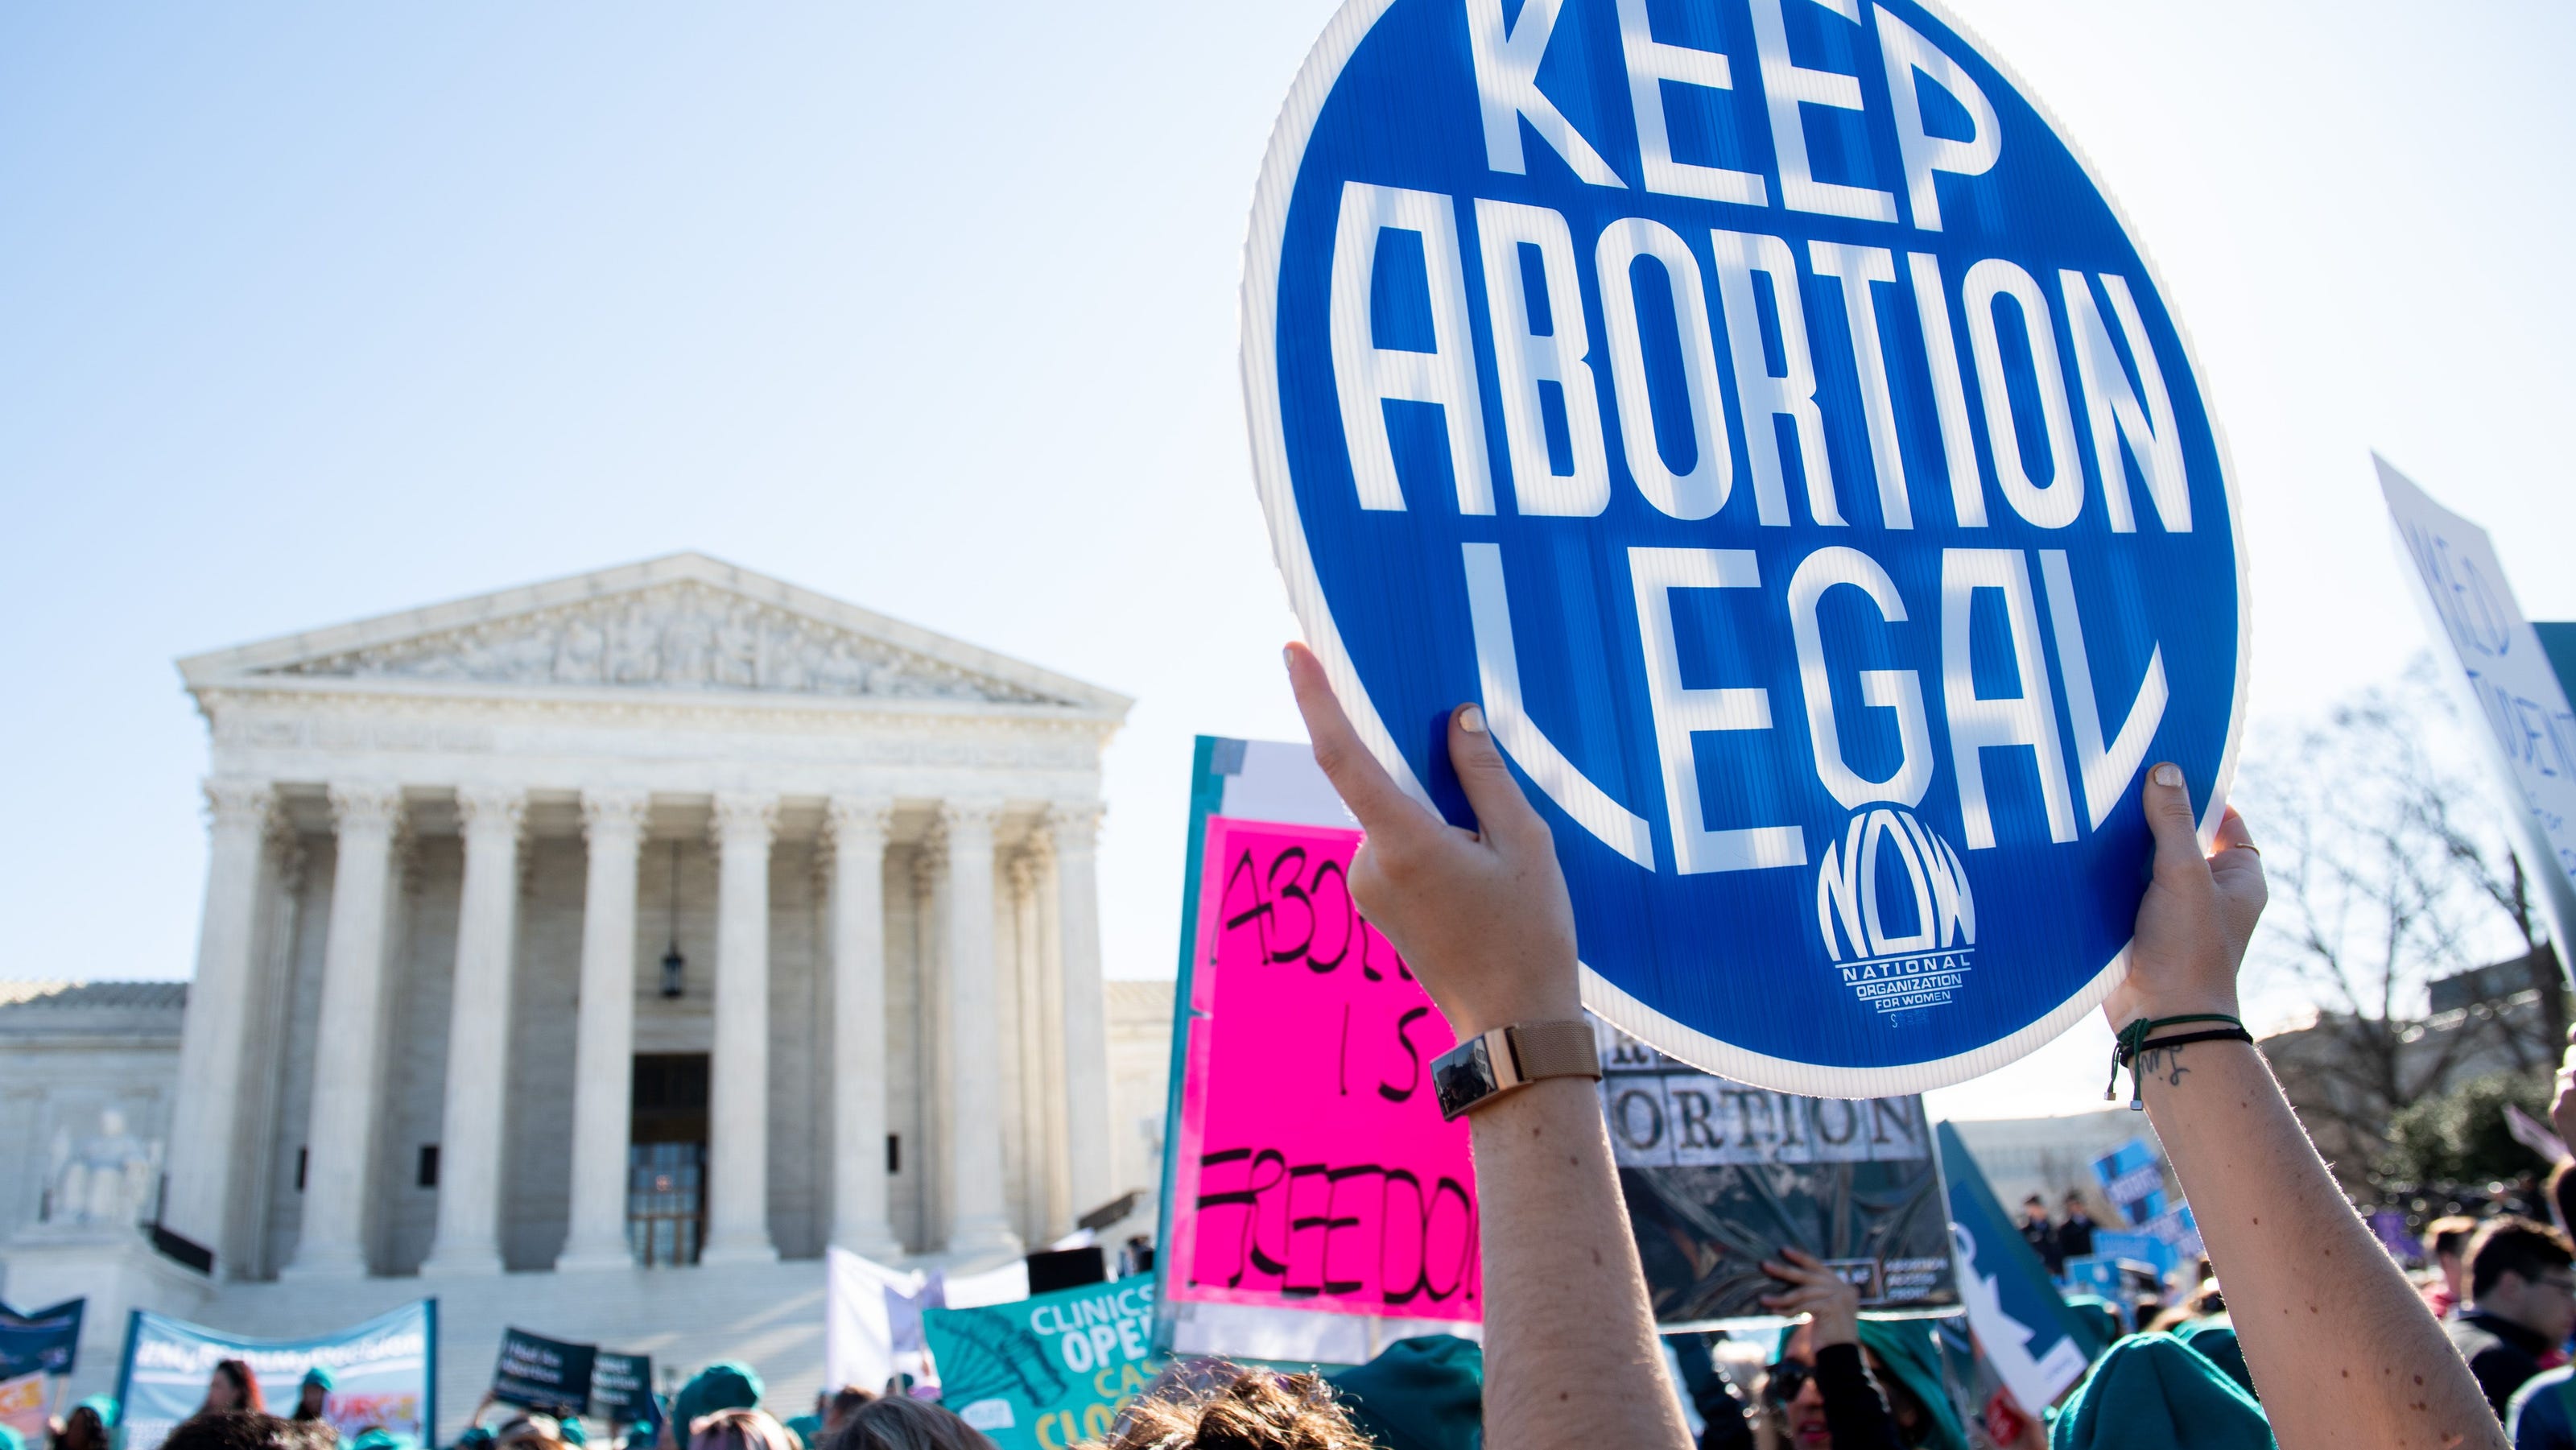 legal abortion essay